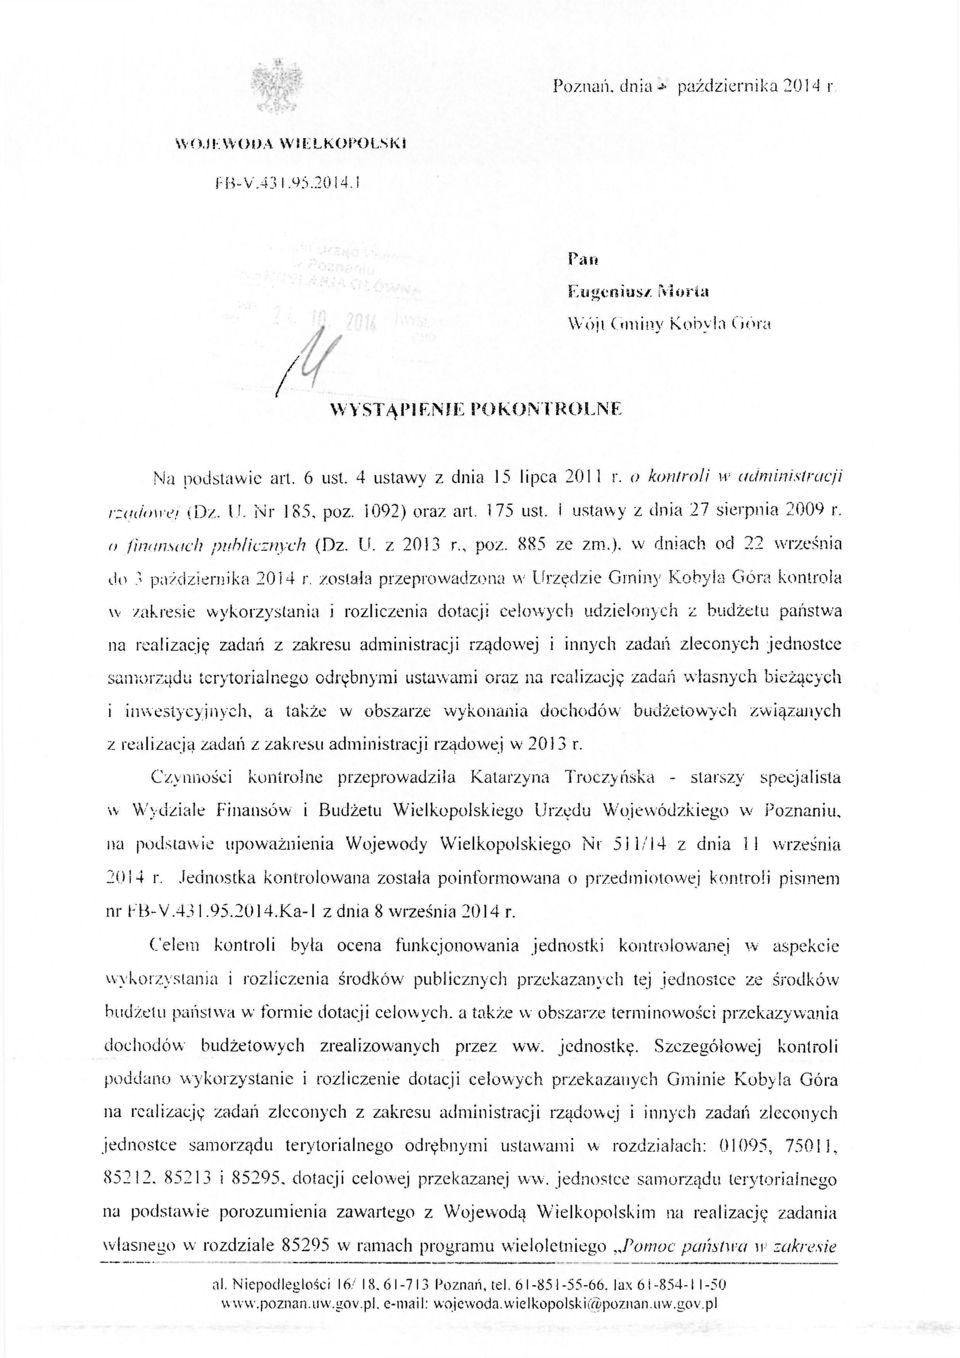 885 ze zm.), w dniach od 22 września do 3 października 2014 r.